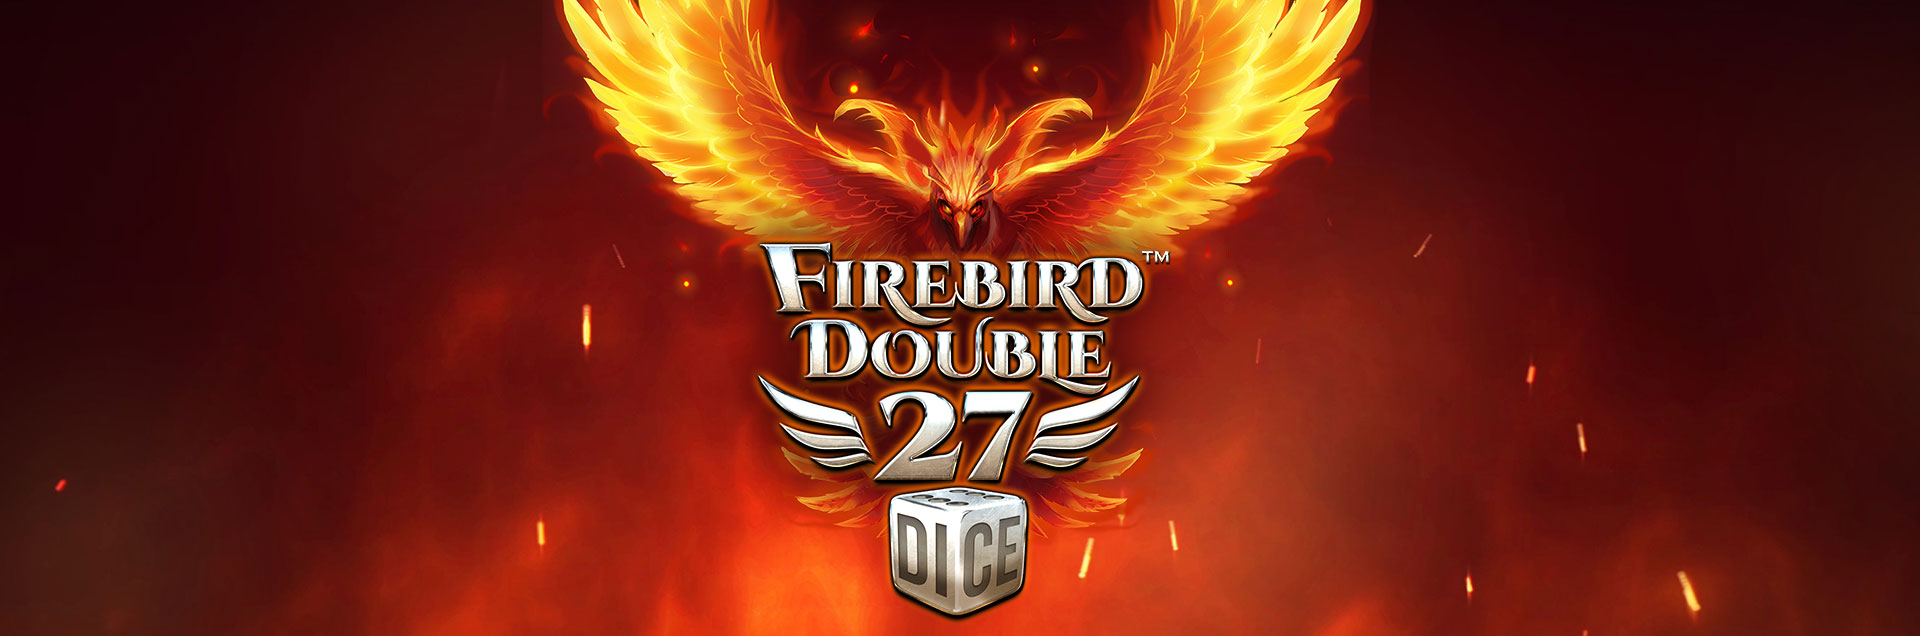 Firebird Double 27 header games